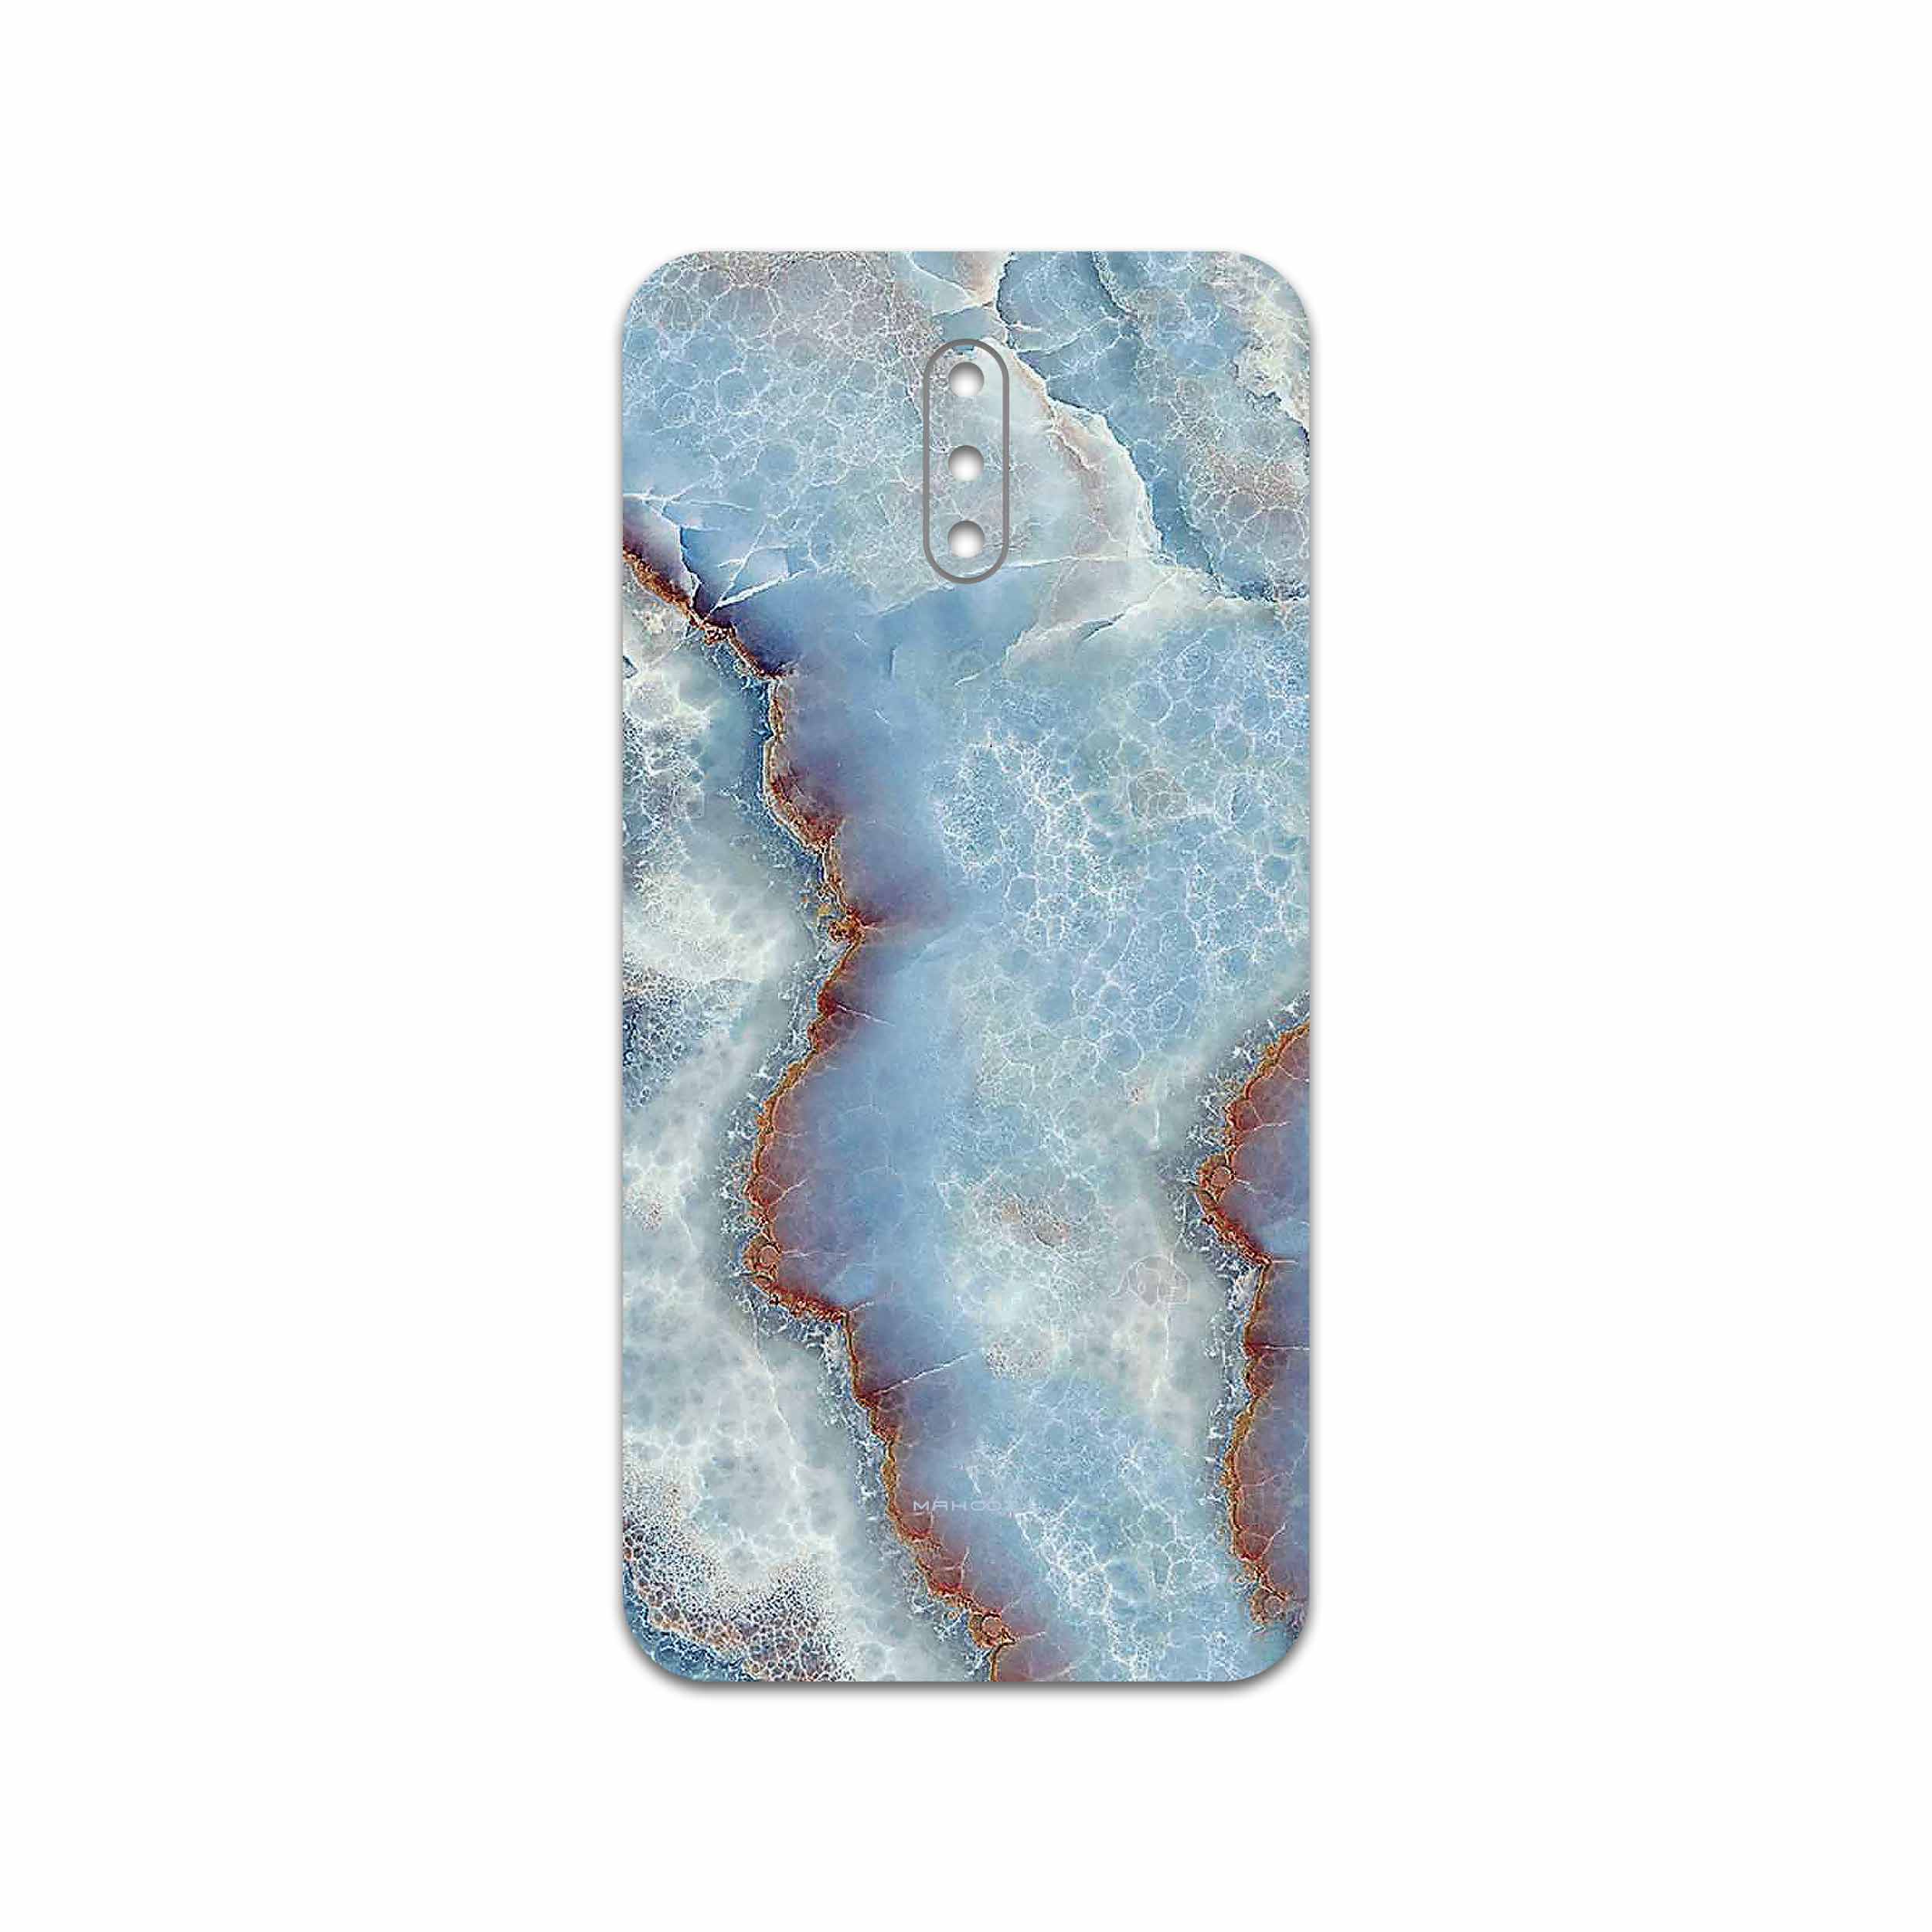 برچسب پوششی ماهوت مدل Blue Ocean Marble مناسب برای گوشی موبایل نوکیا 2.3